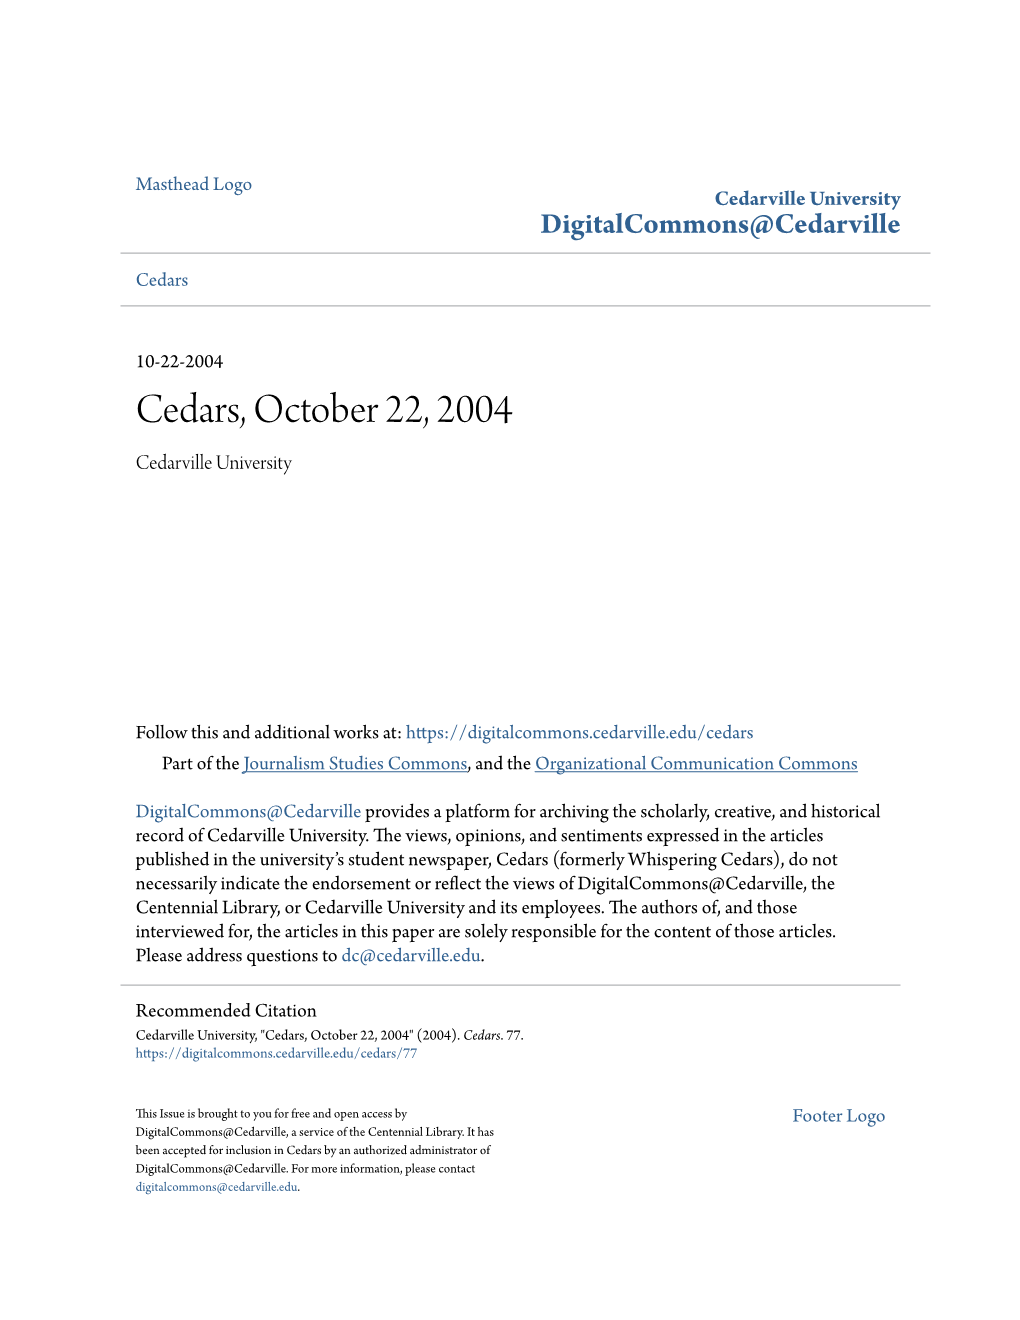 Cedars, October 22, 2004 Cedarville University